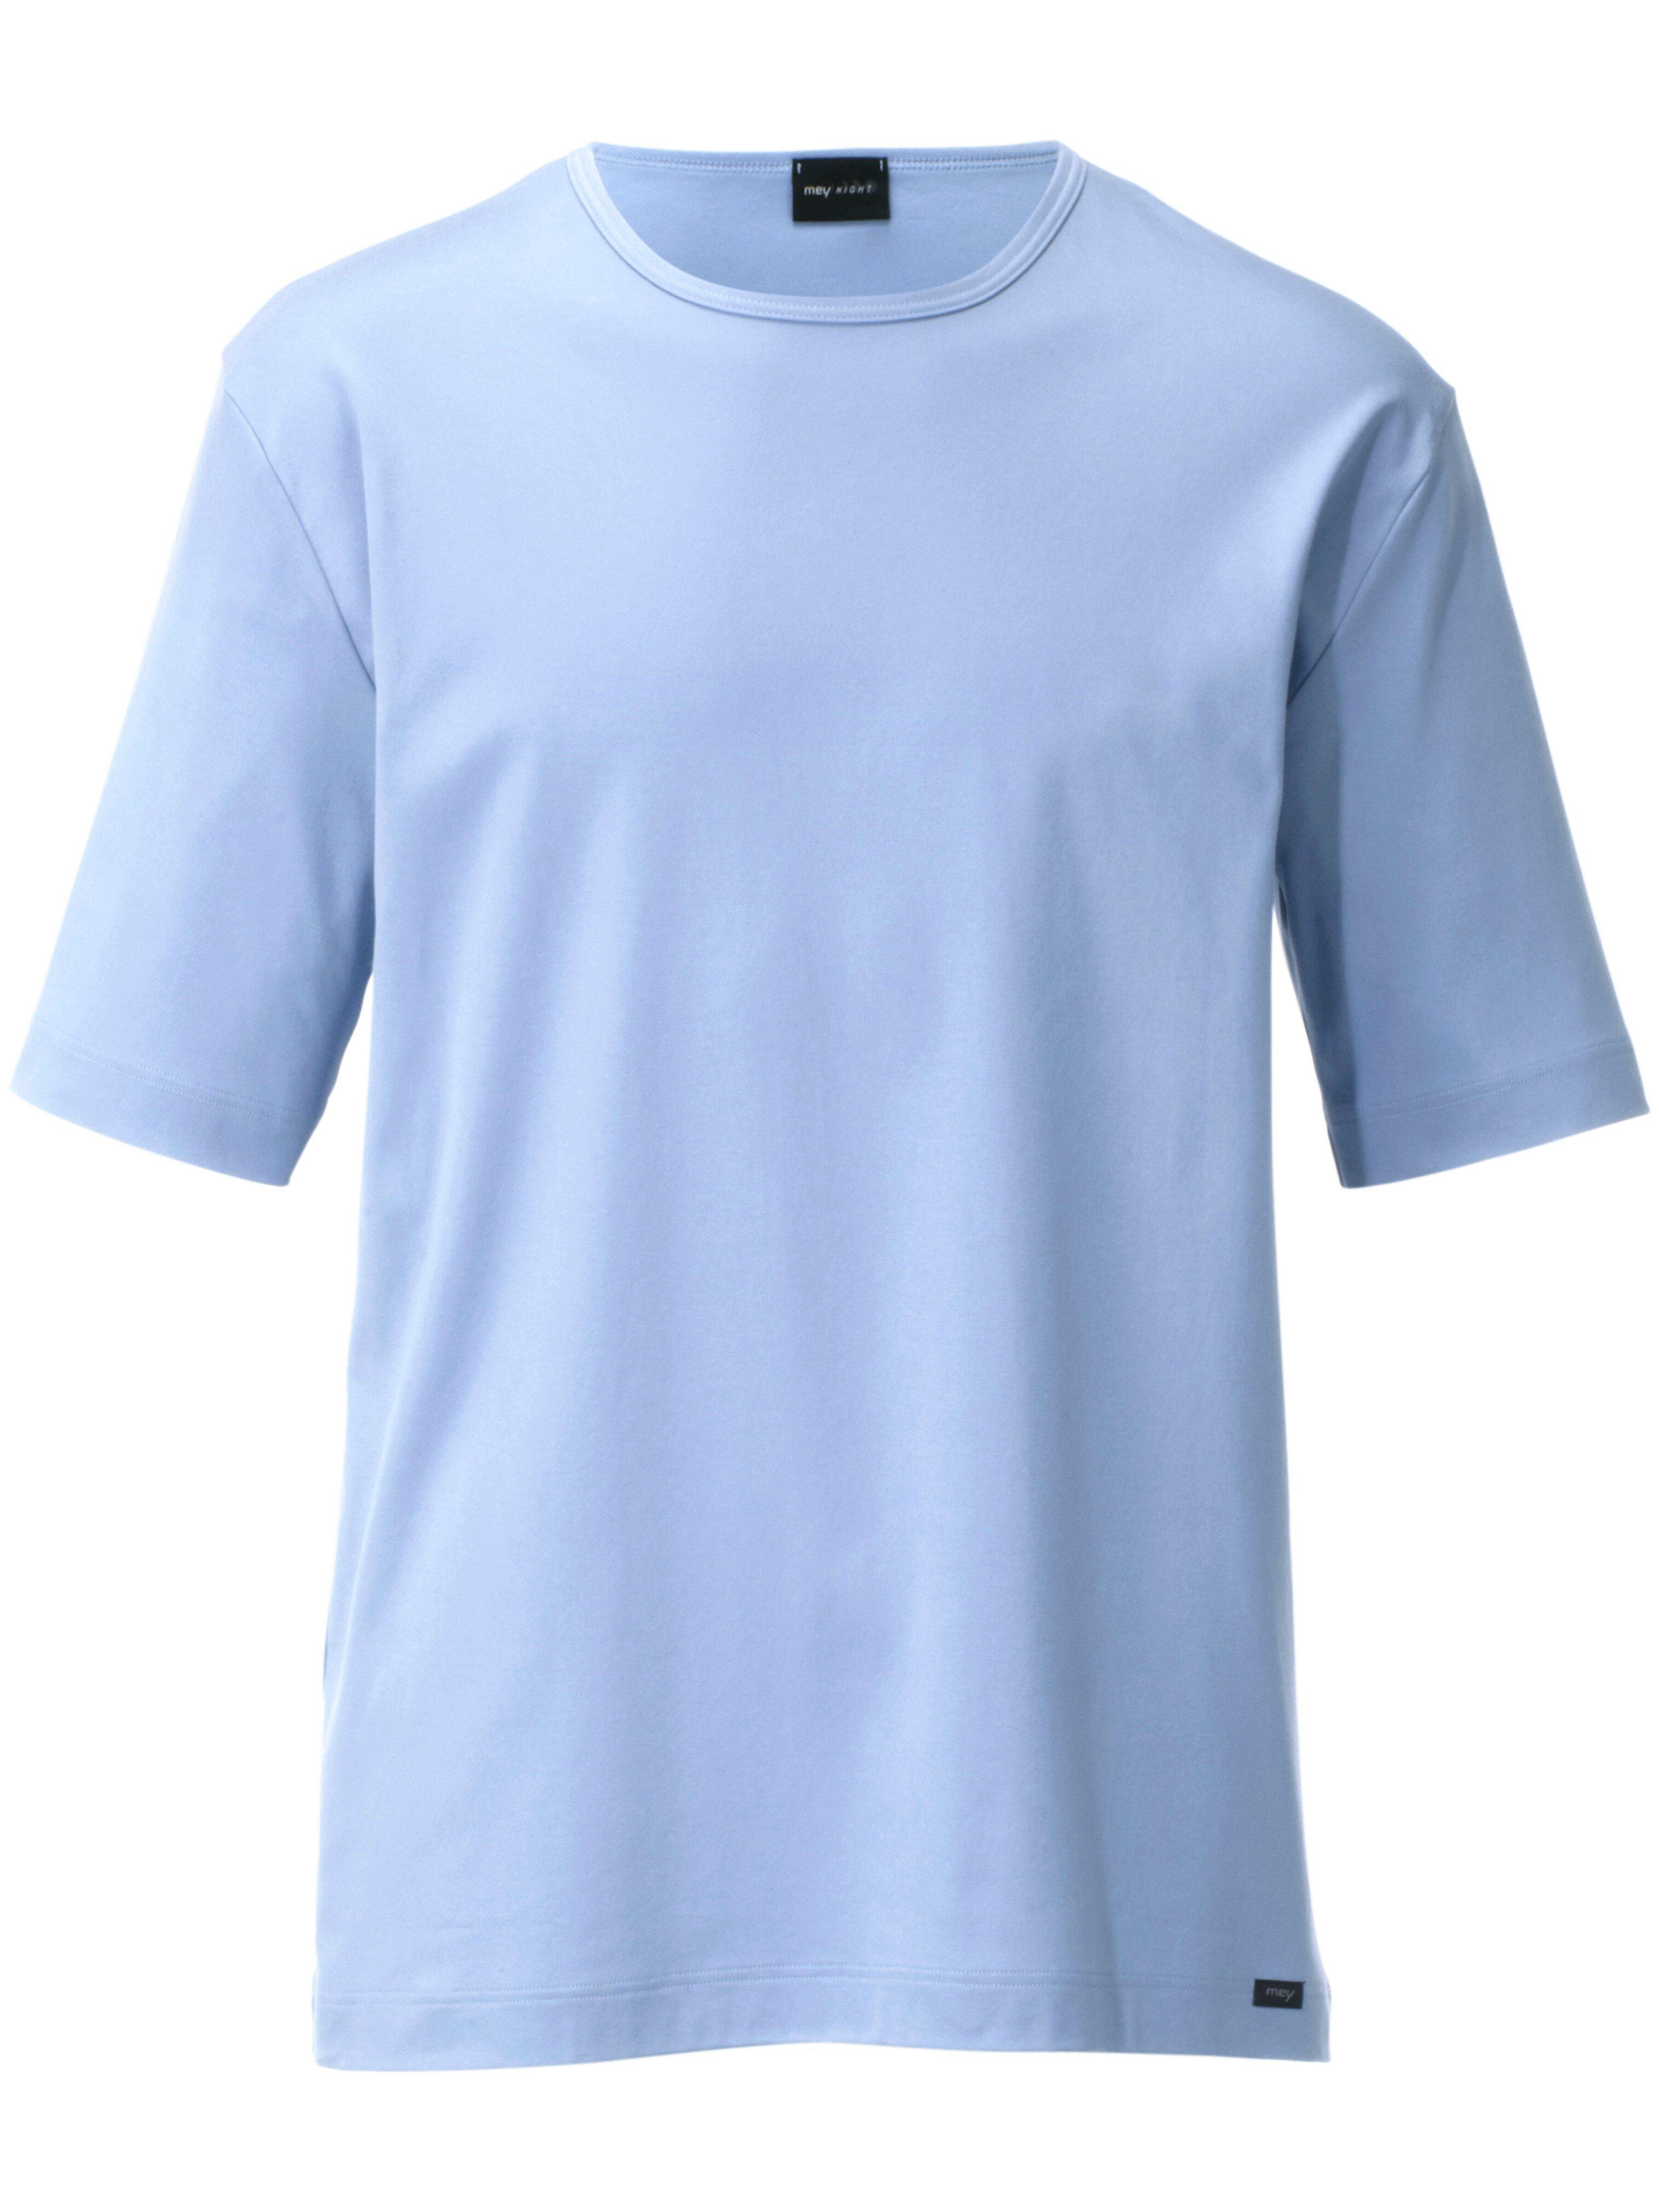 Mey Night - Schlaf-Shirt mit 1/2 Arm